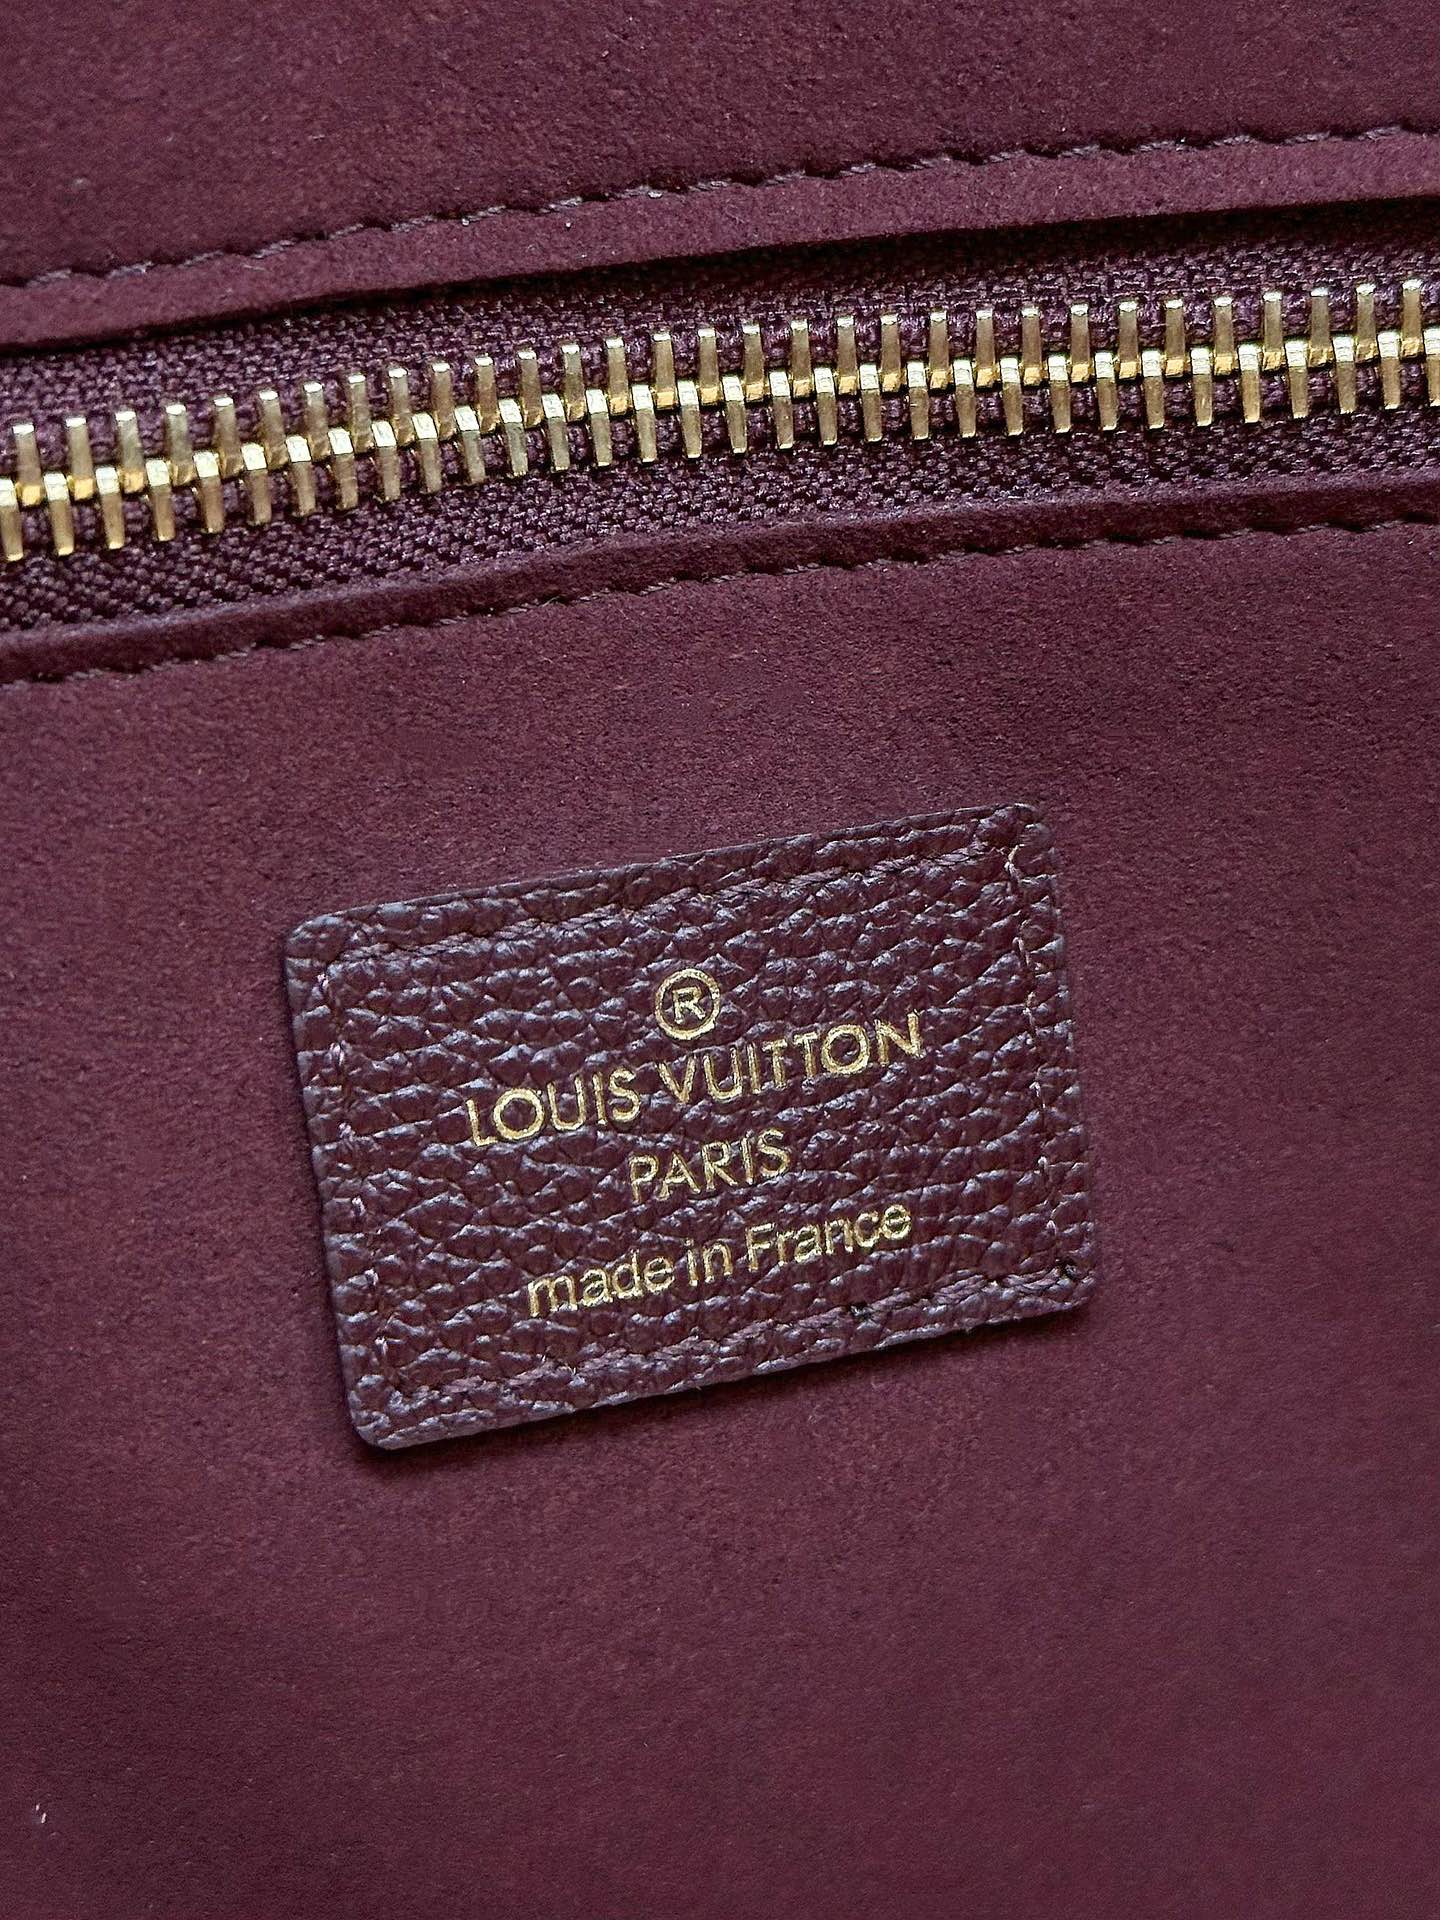 顶级原单M45685紫红Neverfull中号购物袋！重新设计的内袋采用了清新的织物内衬和灵感源自档案馆